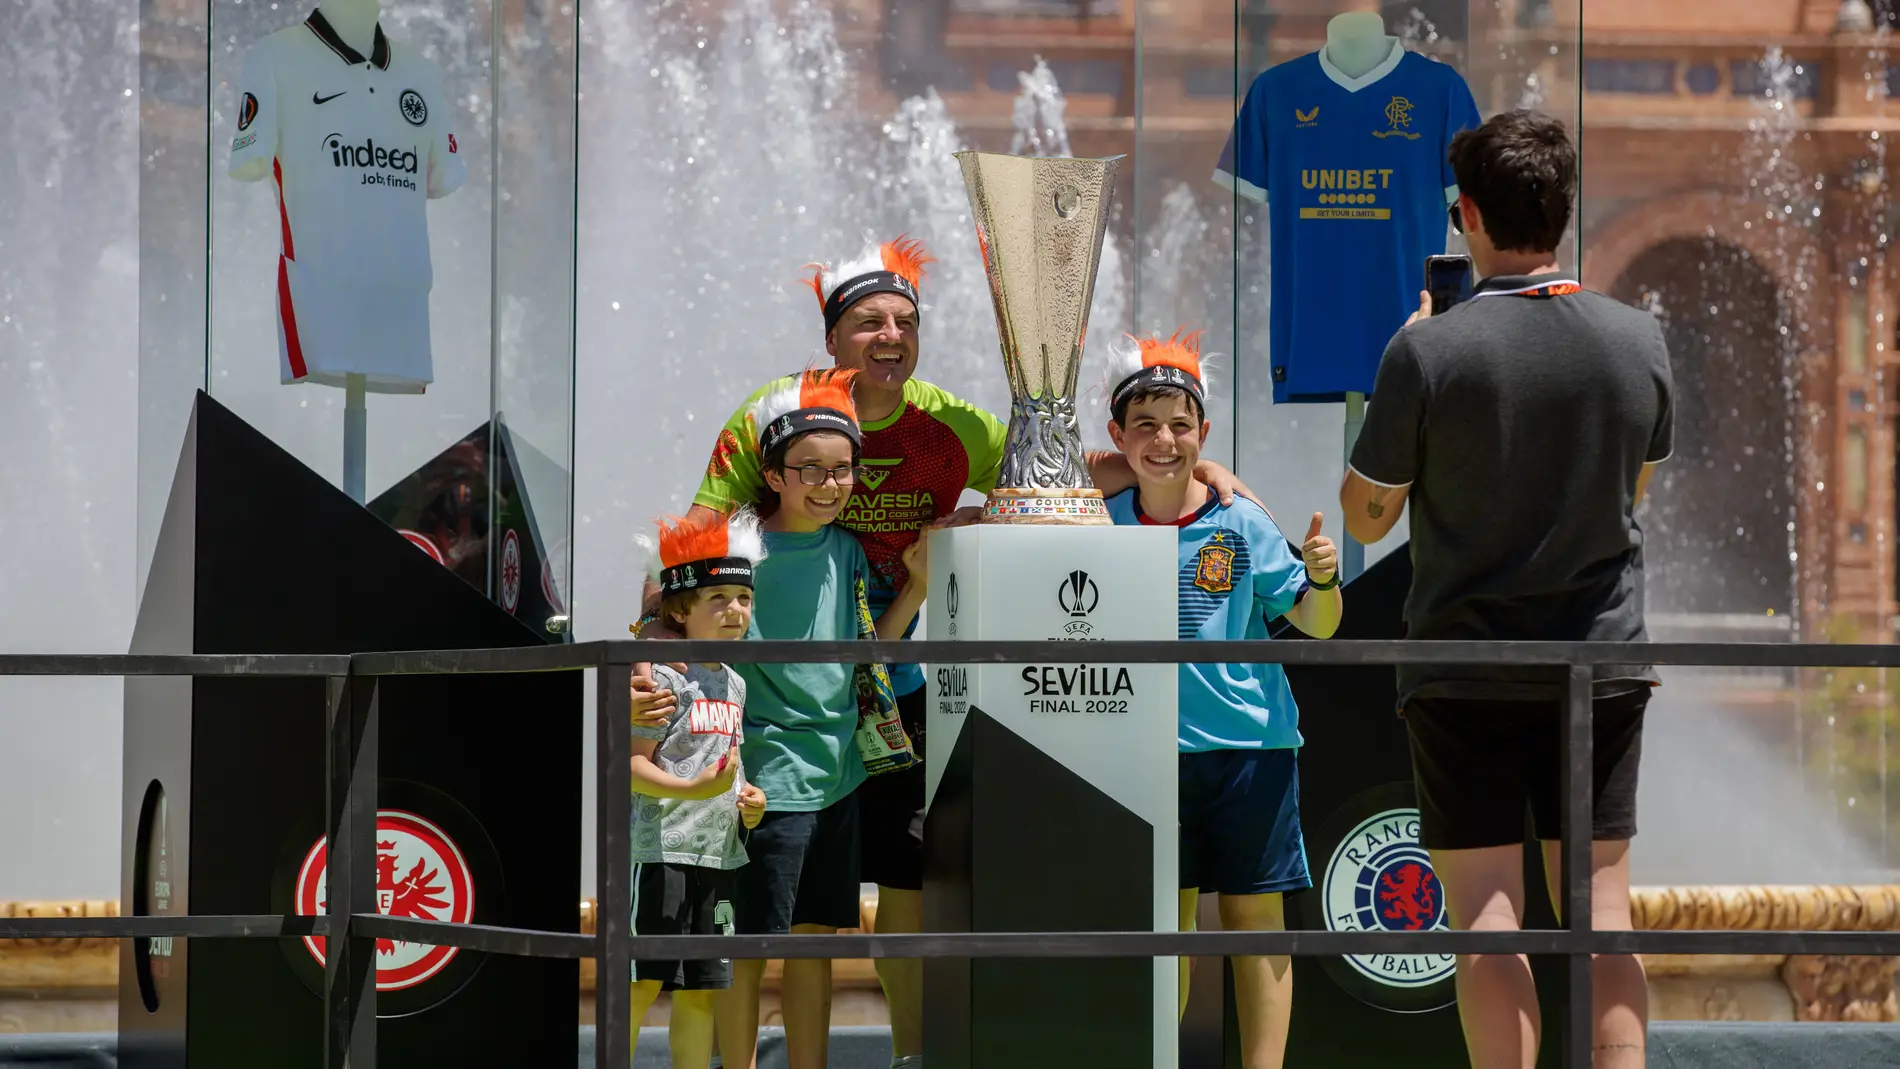  Aficionados se hacen fotos junto al trofeo de la Europa League en la Plaza de España de Sevilla.